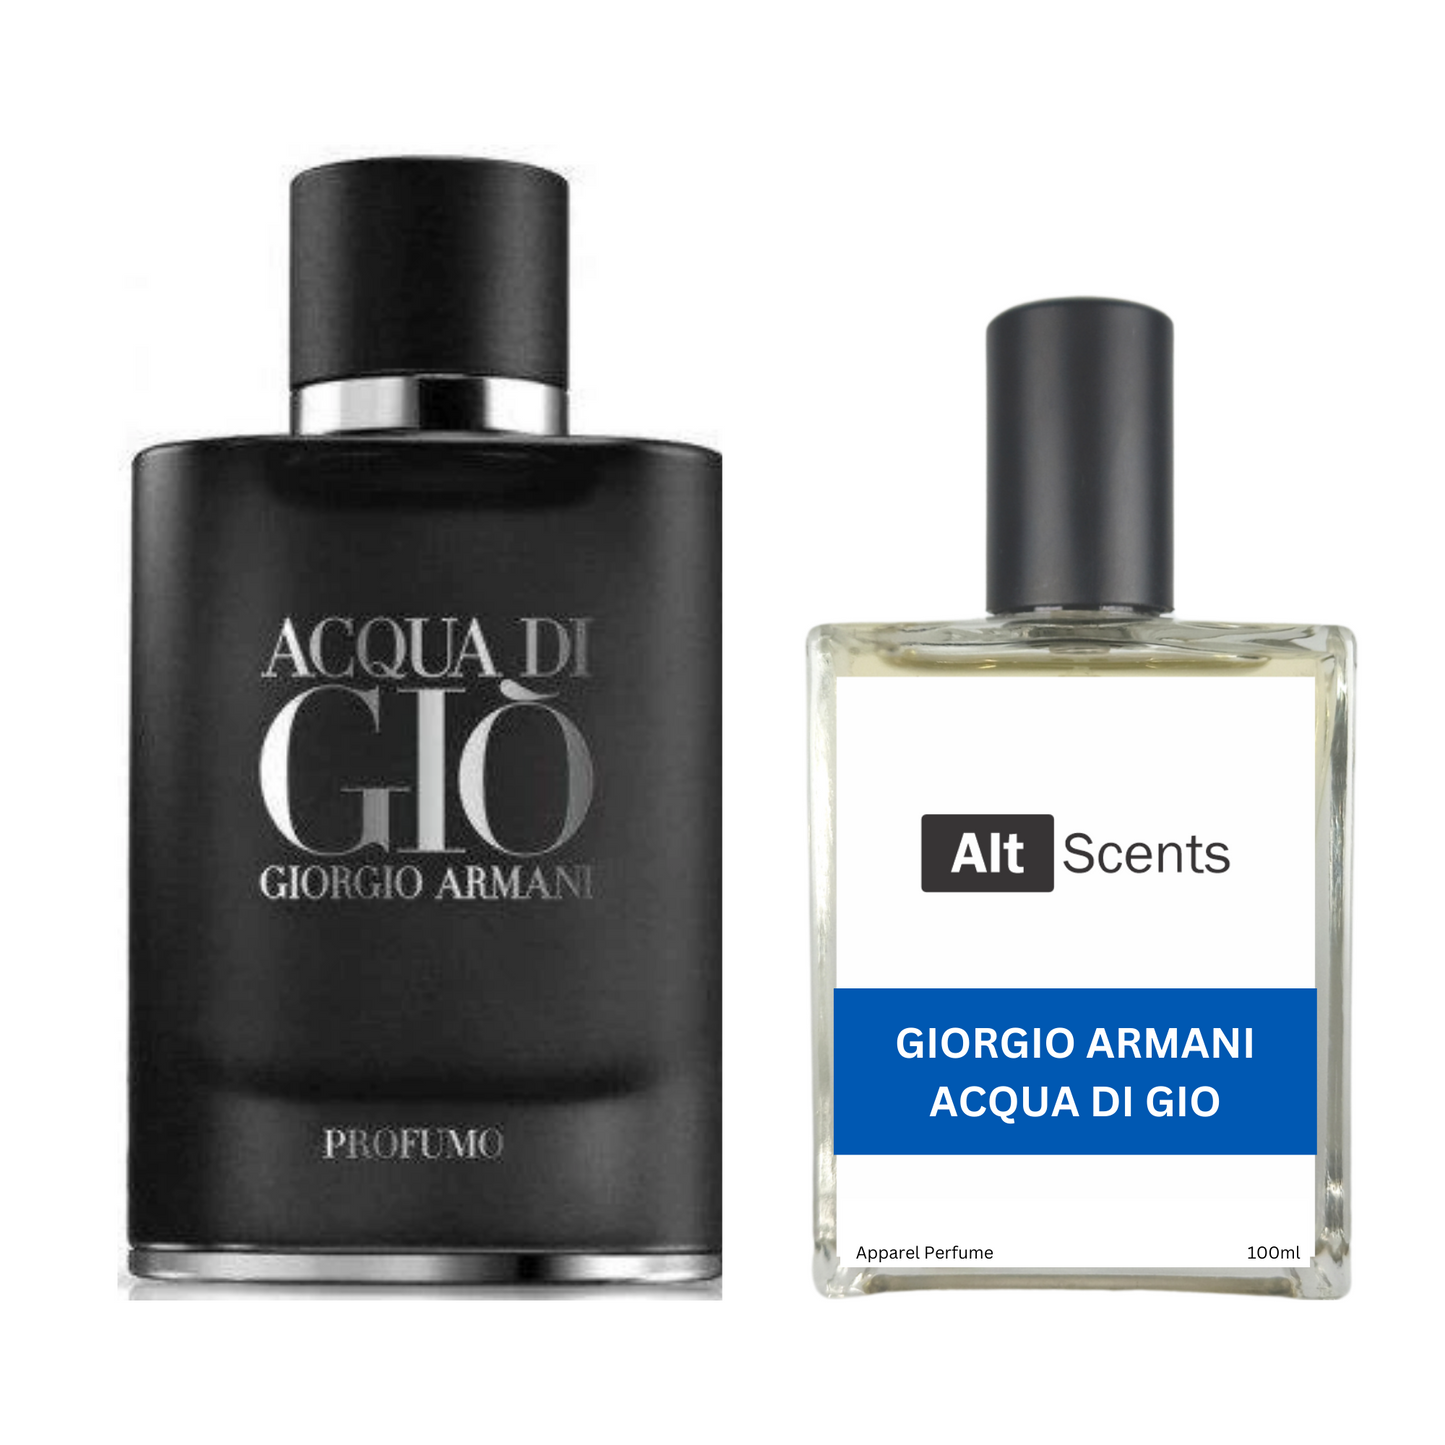 Acqua Di Gio Profumo type Perfume for Men